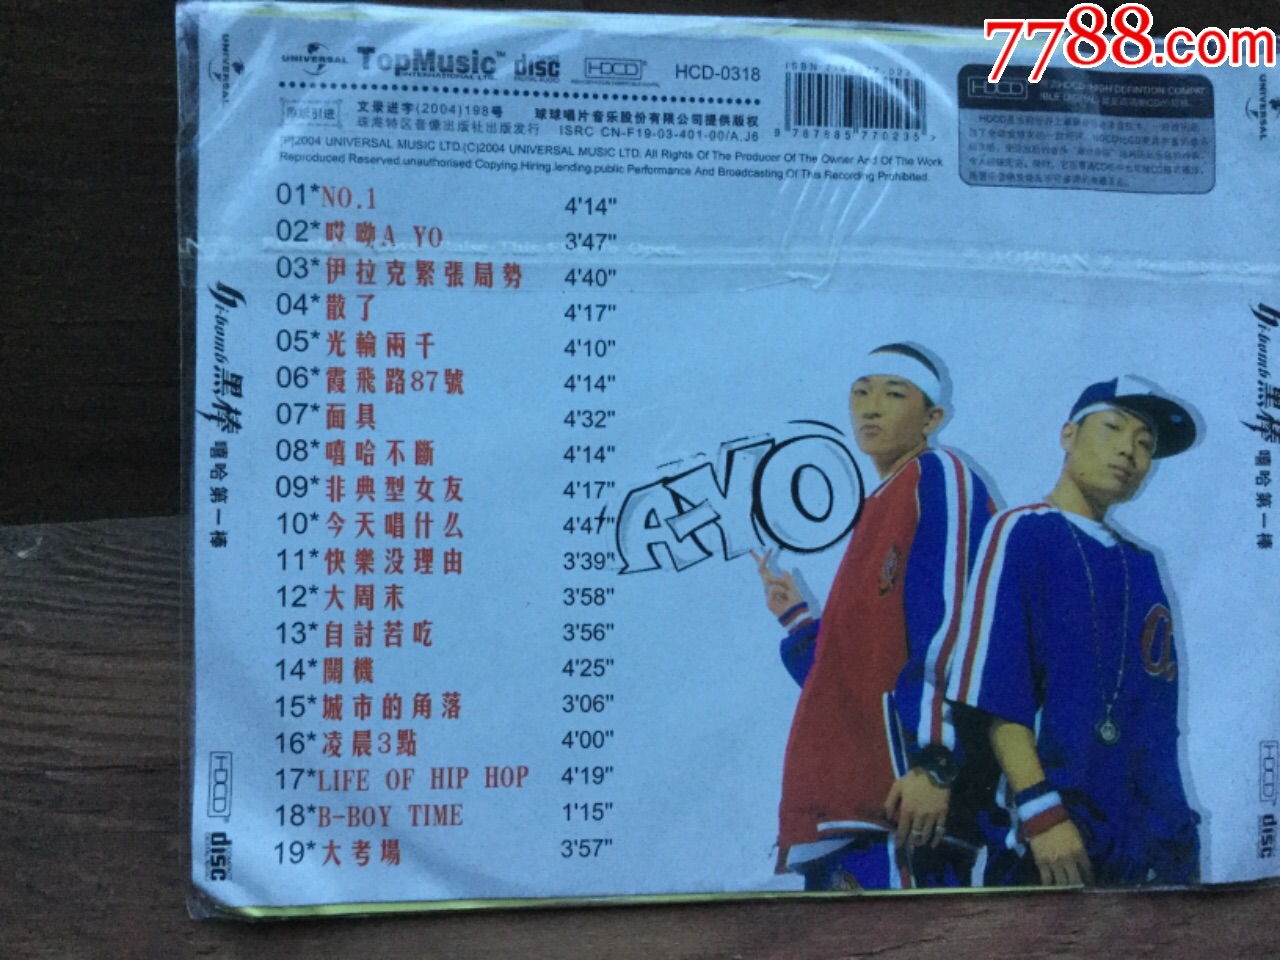 黑棒震撼亚洲的第一支中国内地hiphop组合全新简装cd